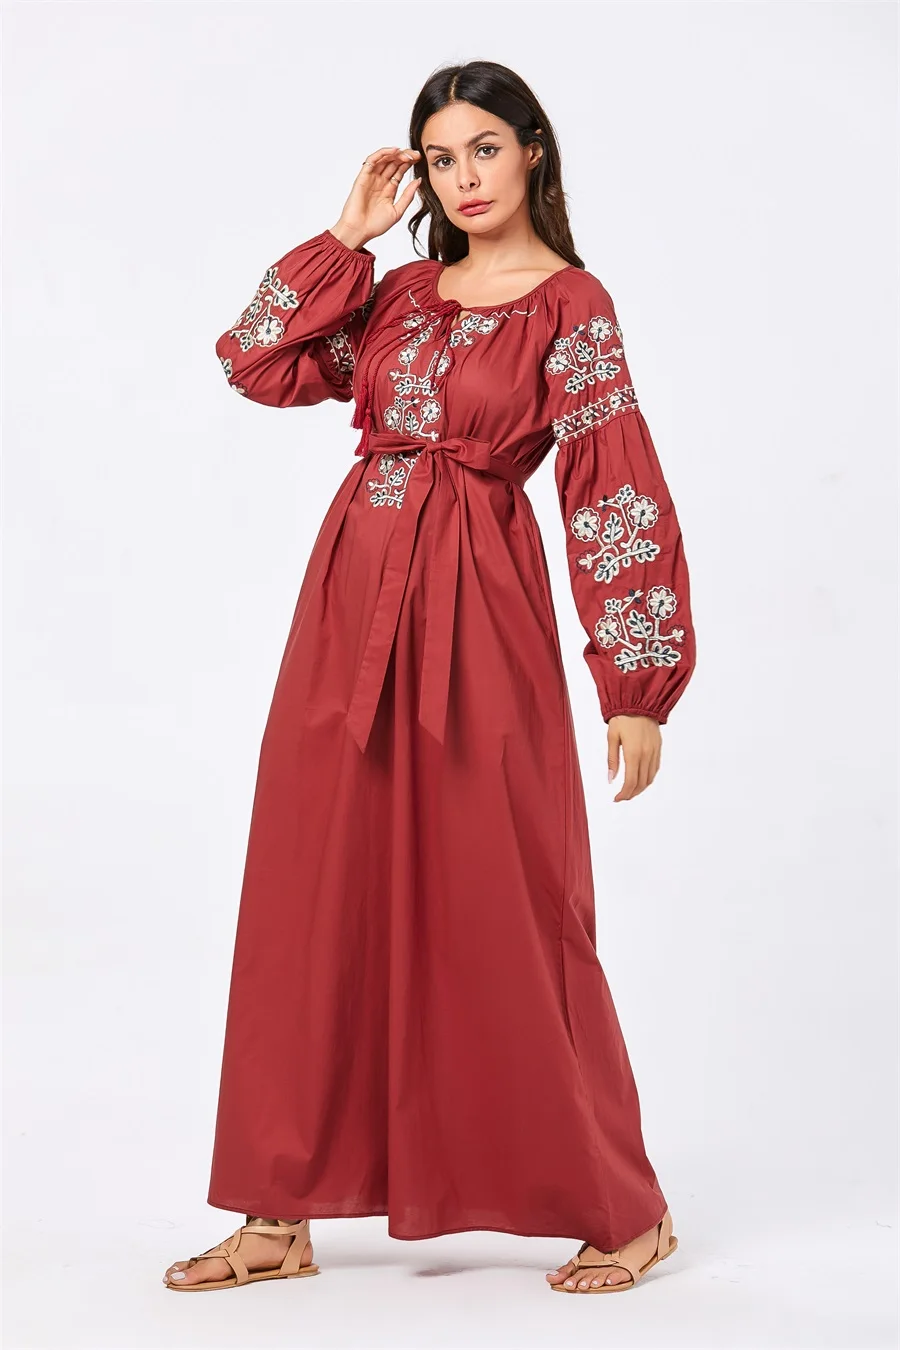 Siskakia повседневное длинное платье размера плюс элегантные женские платья с длинным рукавом красные качели Цветочная вышивка кисточка шнурок дизайн